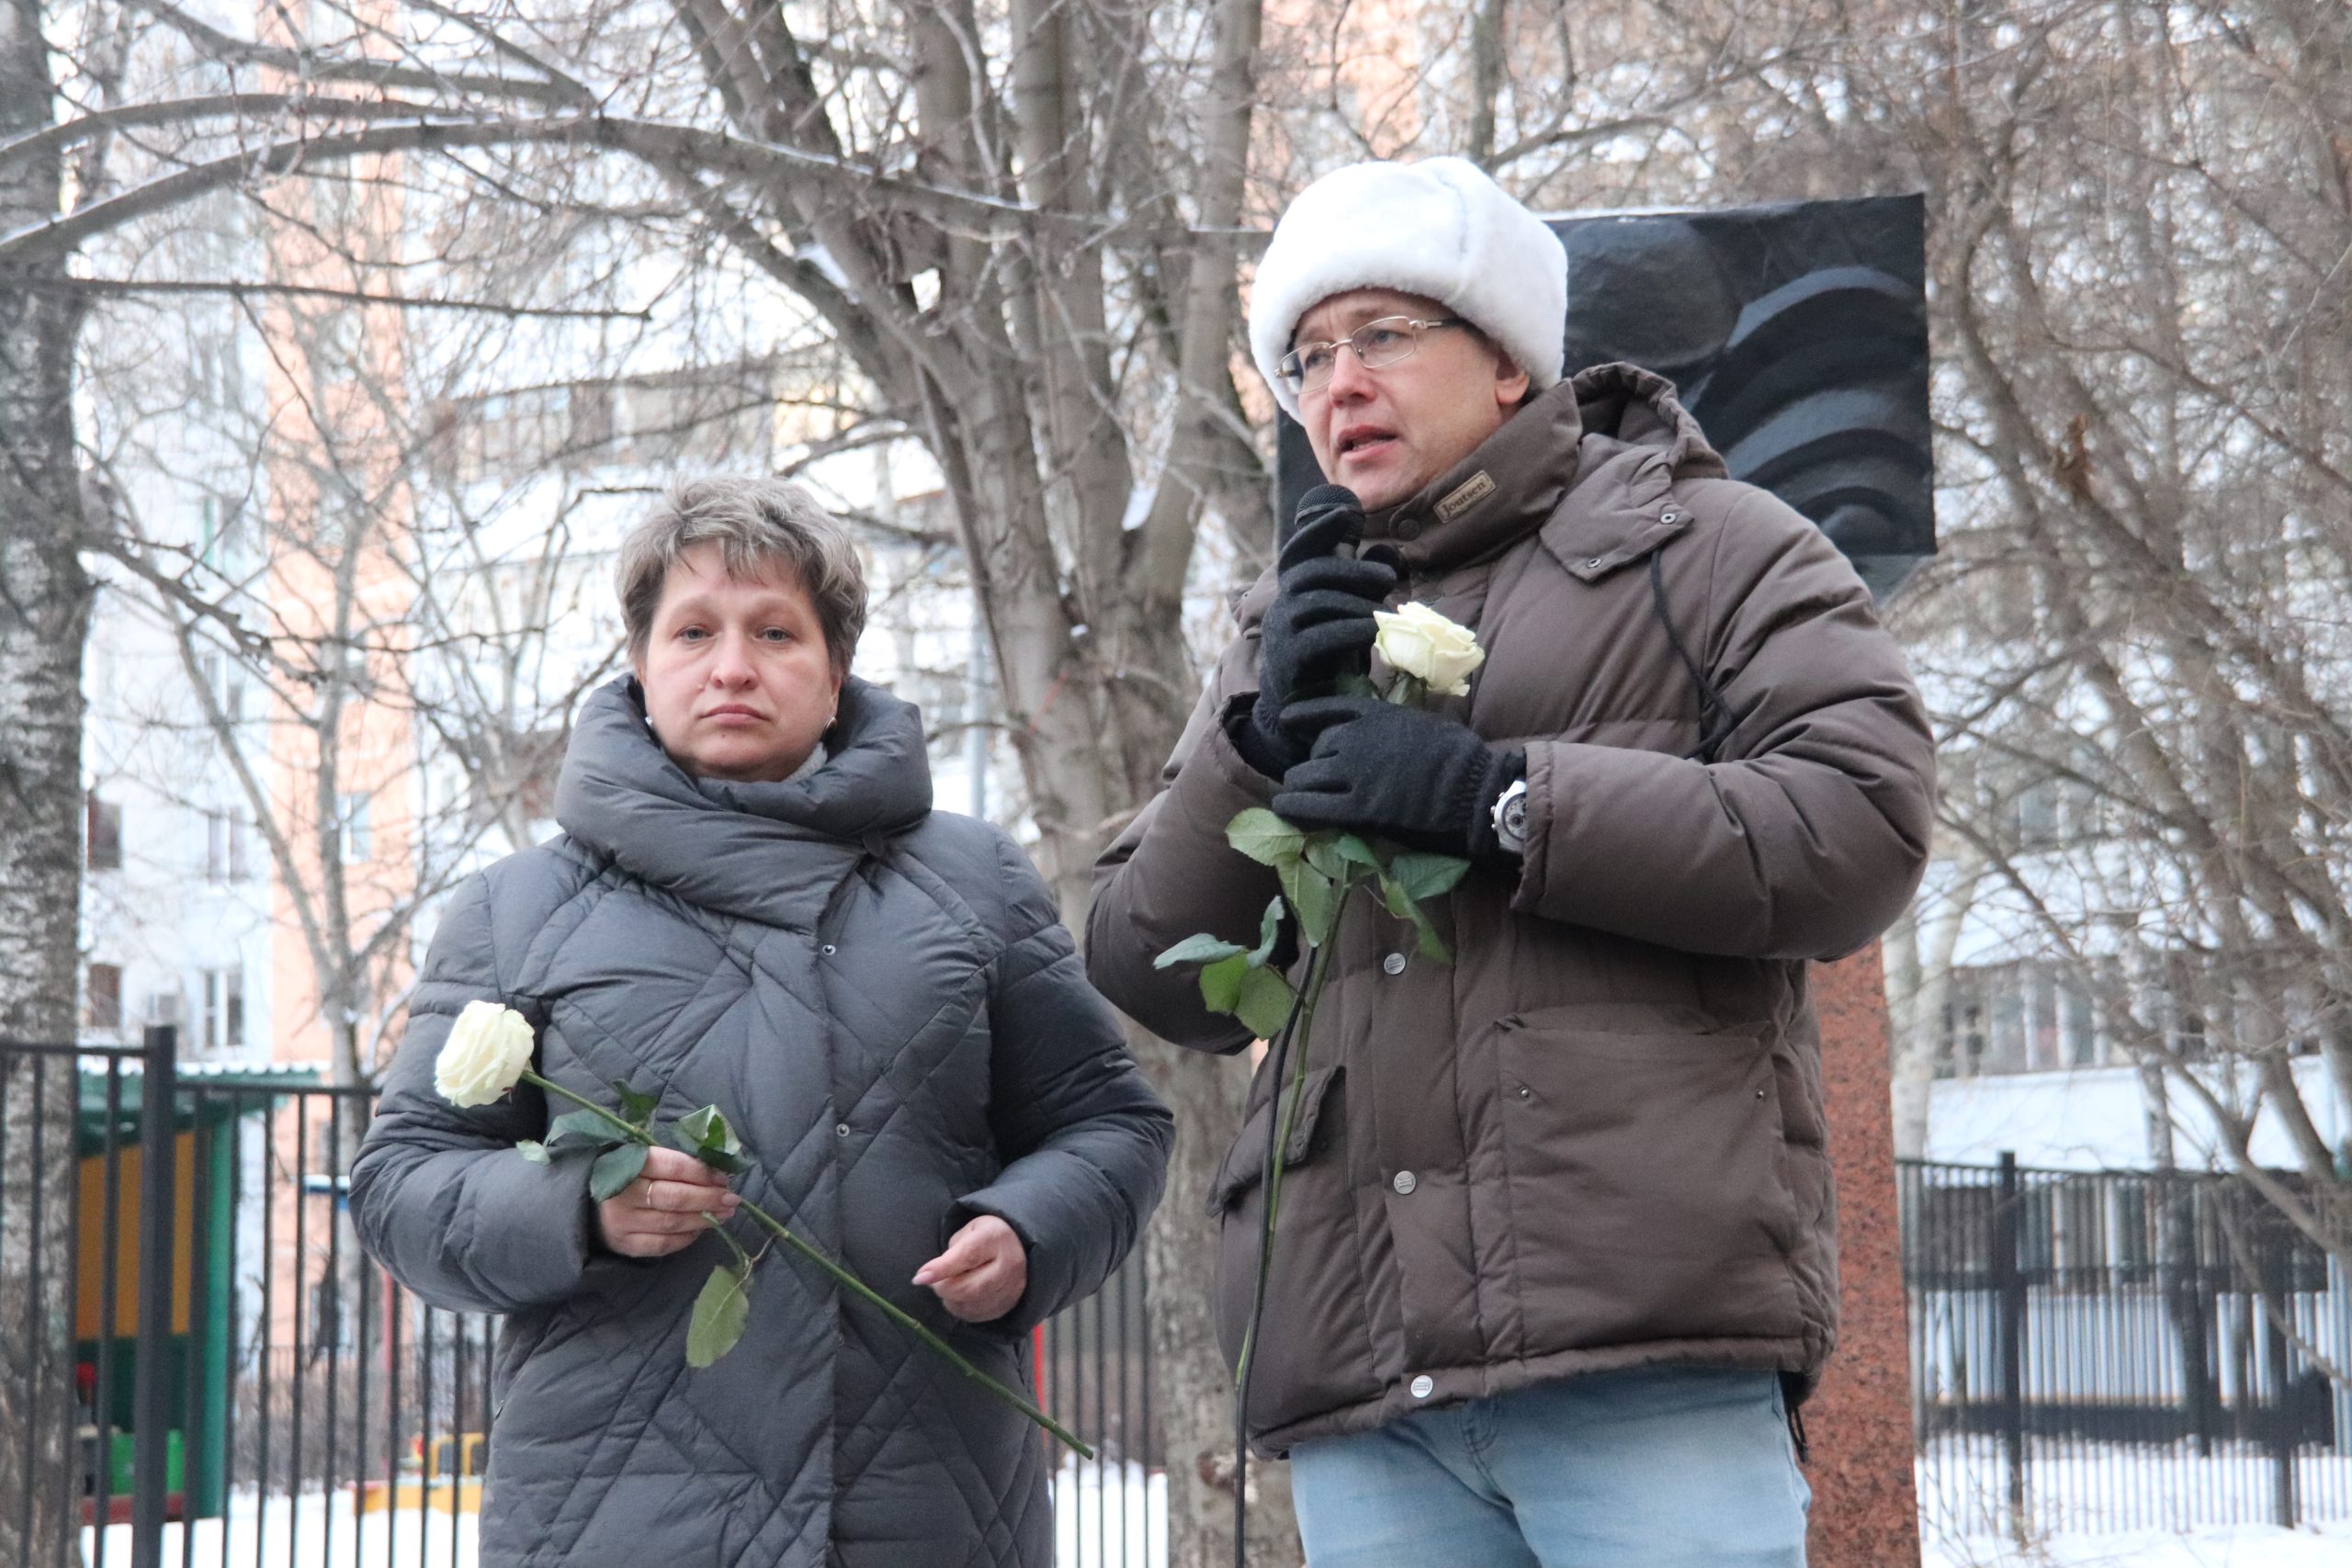 Мемориальная акция у памятника Солдату состоялась в Орехове-Борисове Южном